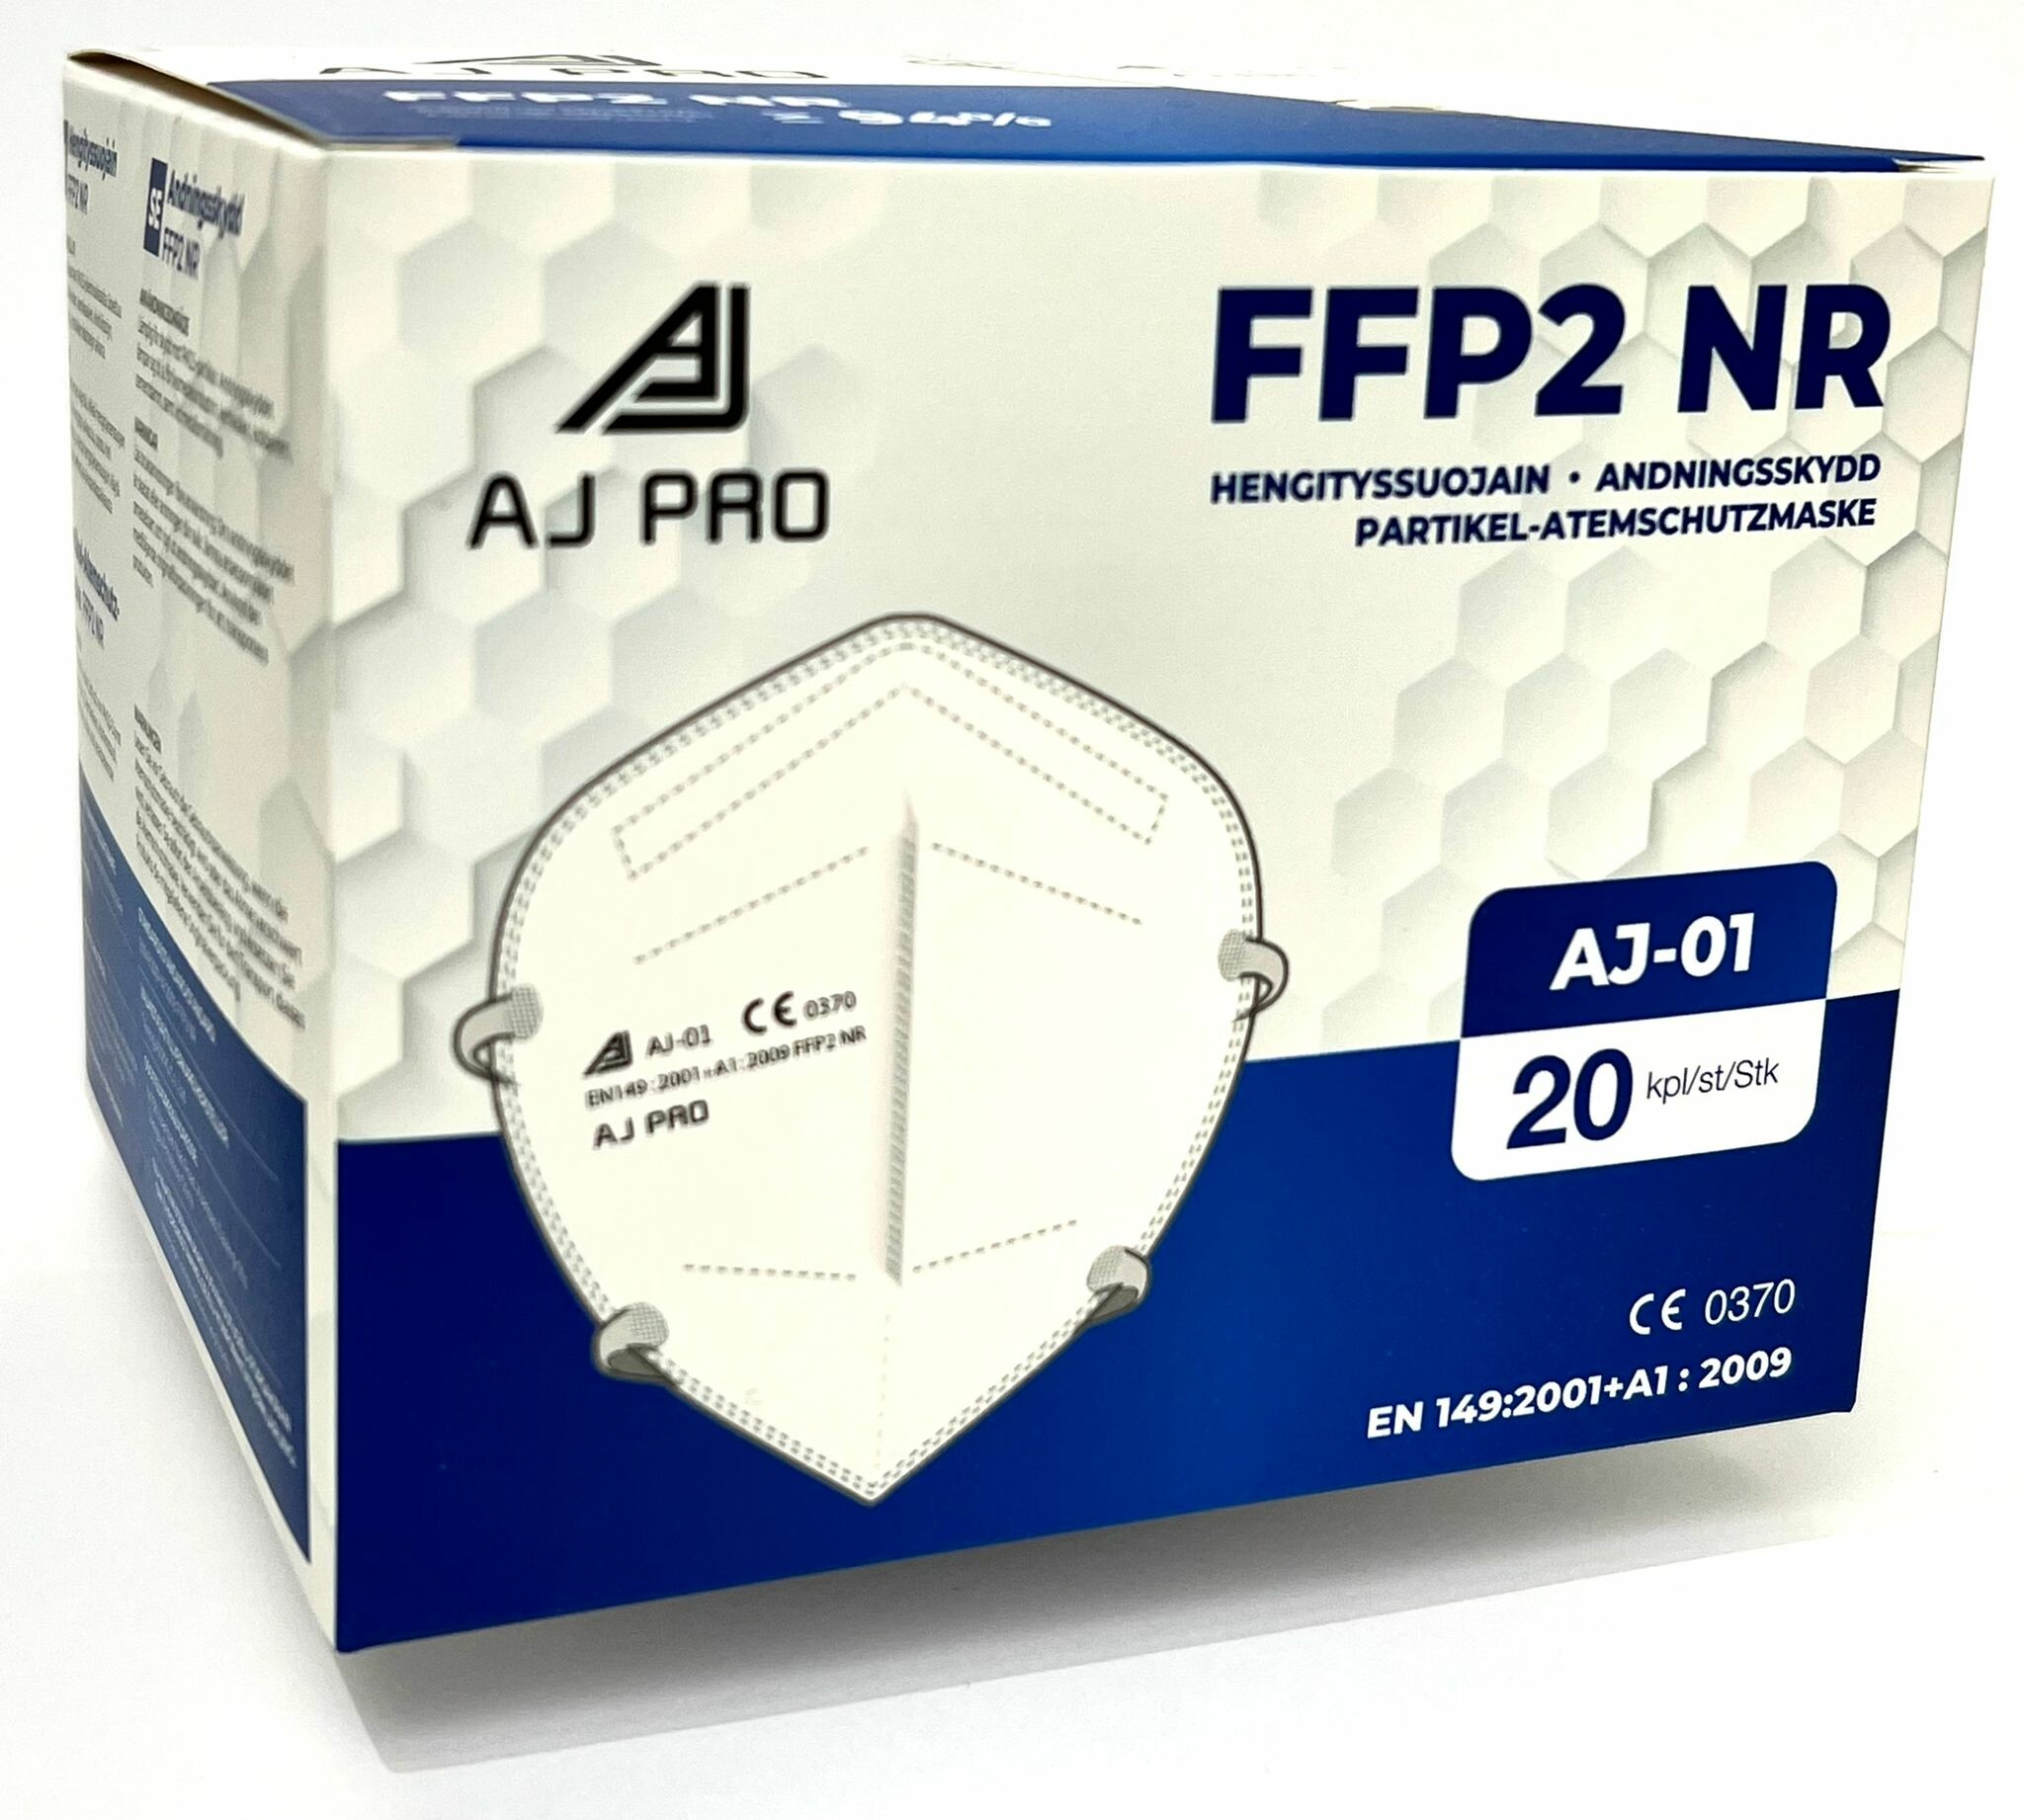 Aj Pro FFP2 hengityssuojain